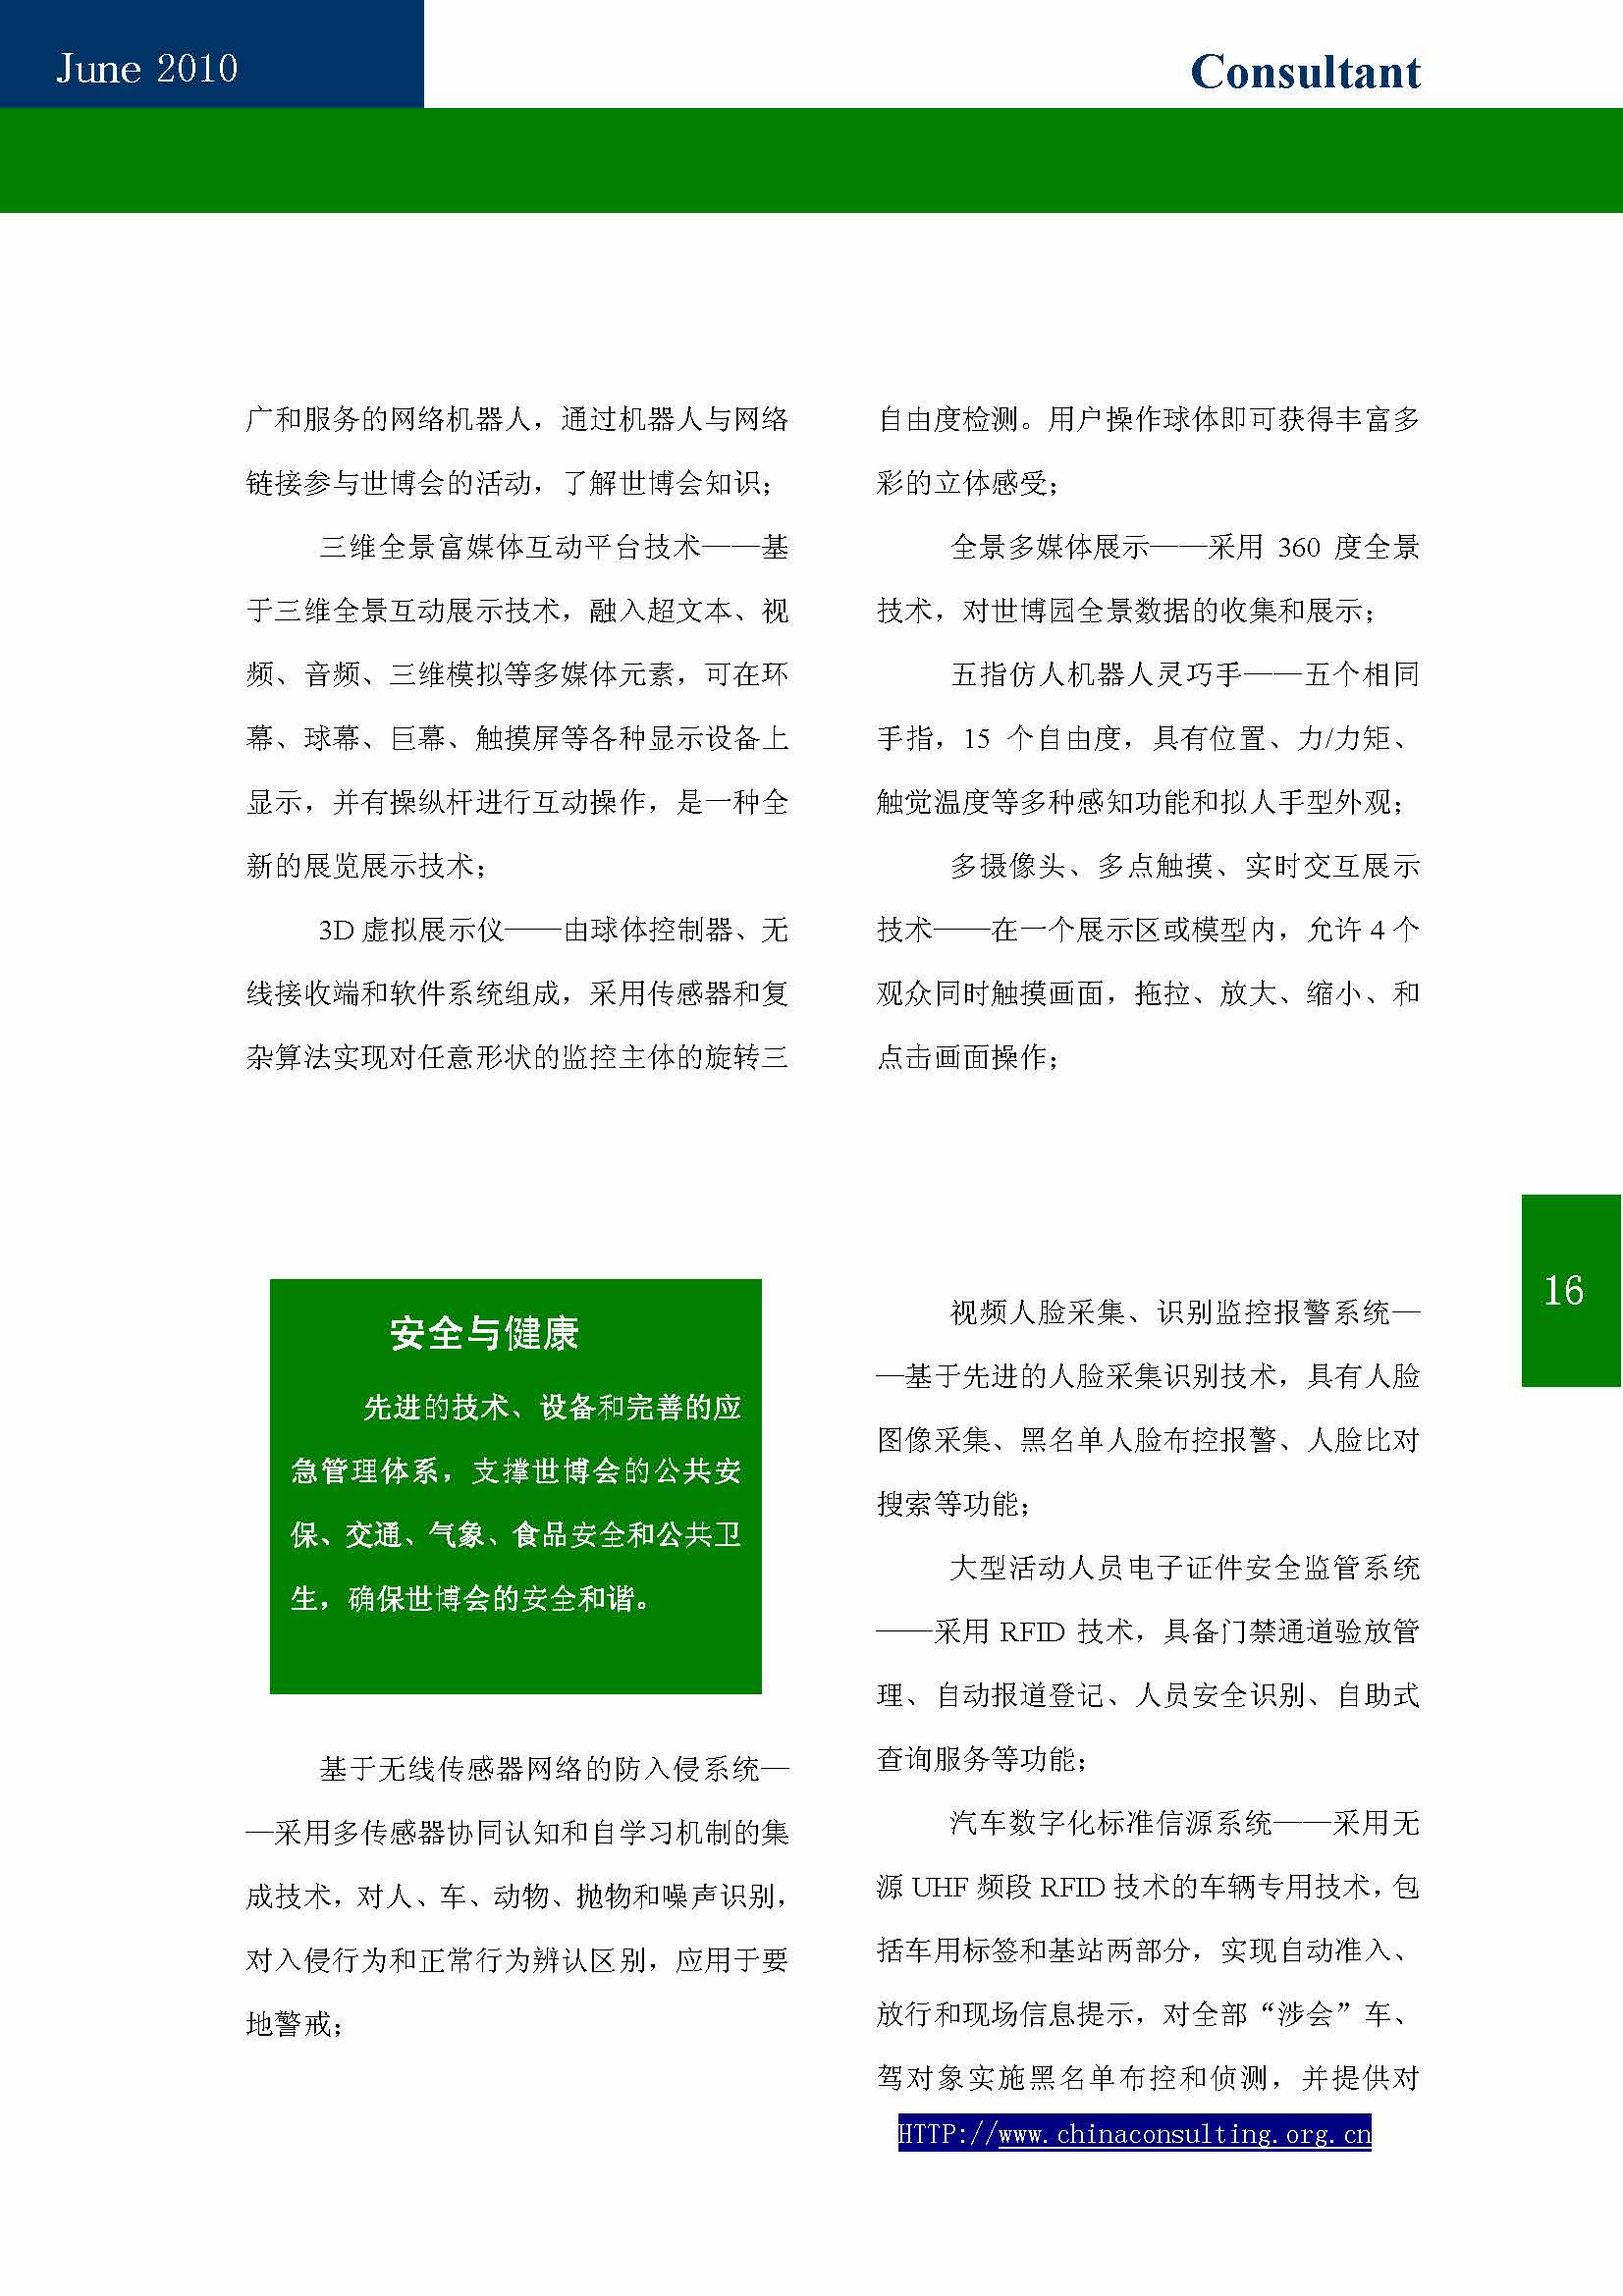 10中国科技咨询协会第十期会刊_页面_18.jpg